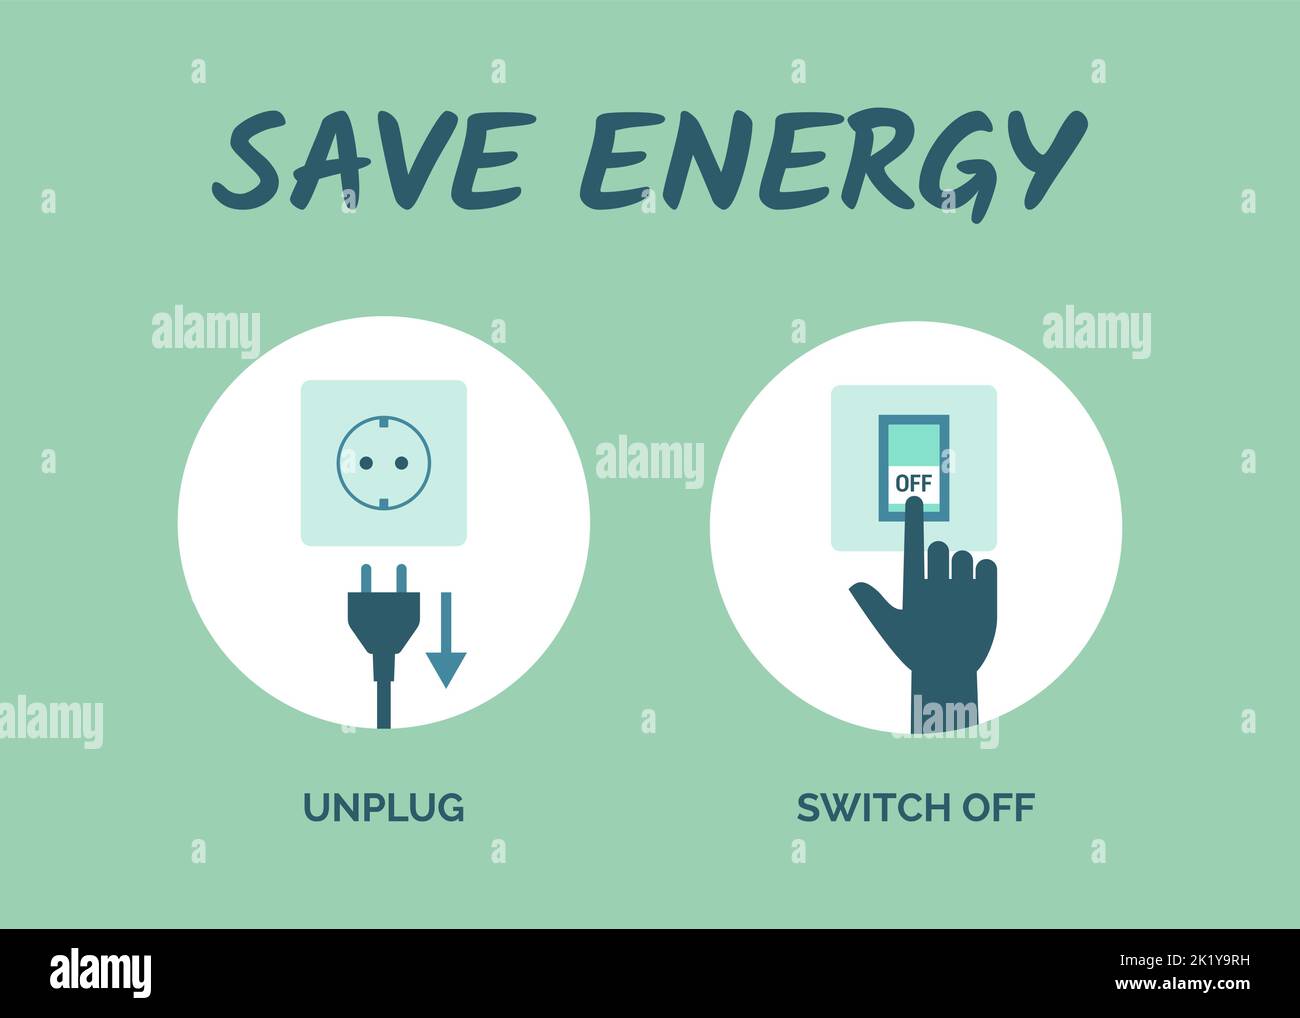 Consejos para ahorrar energía: Desenchufe los aparatos cuando no los utilice y apague las luces Ilustración del Vector